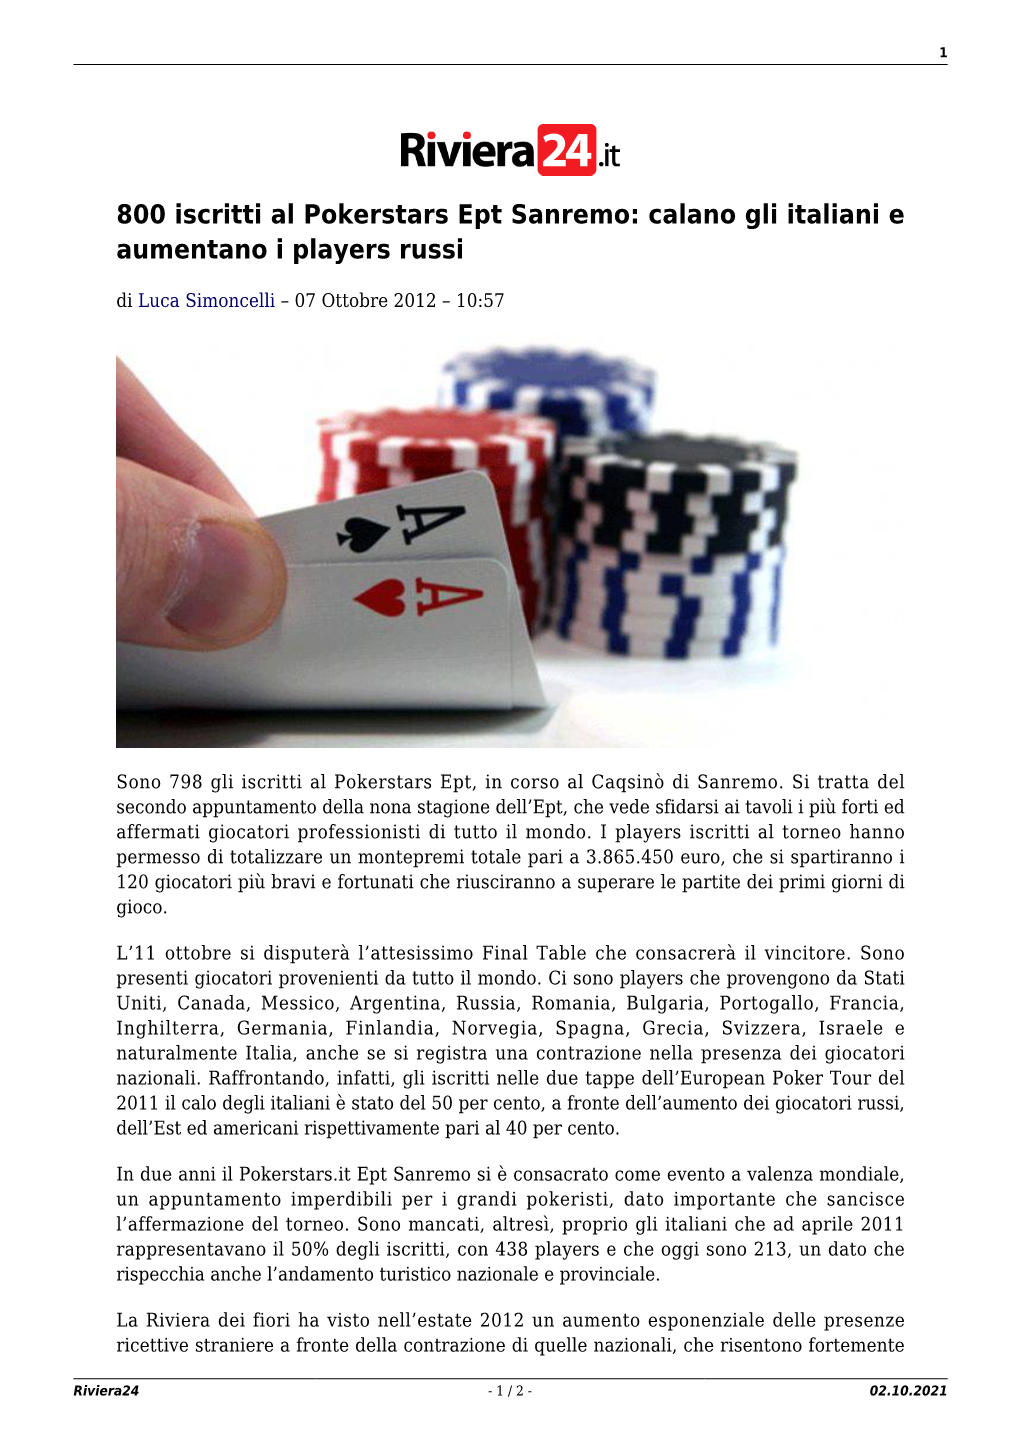 800 Iscritti Al Pokerstars Ept Sanremo: Calano Gli Italiani E Aumentano I Players Russi